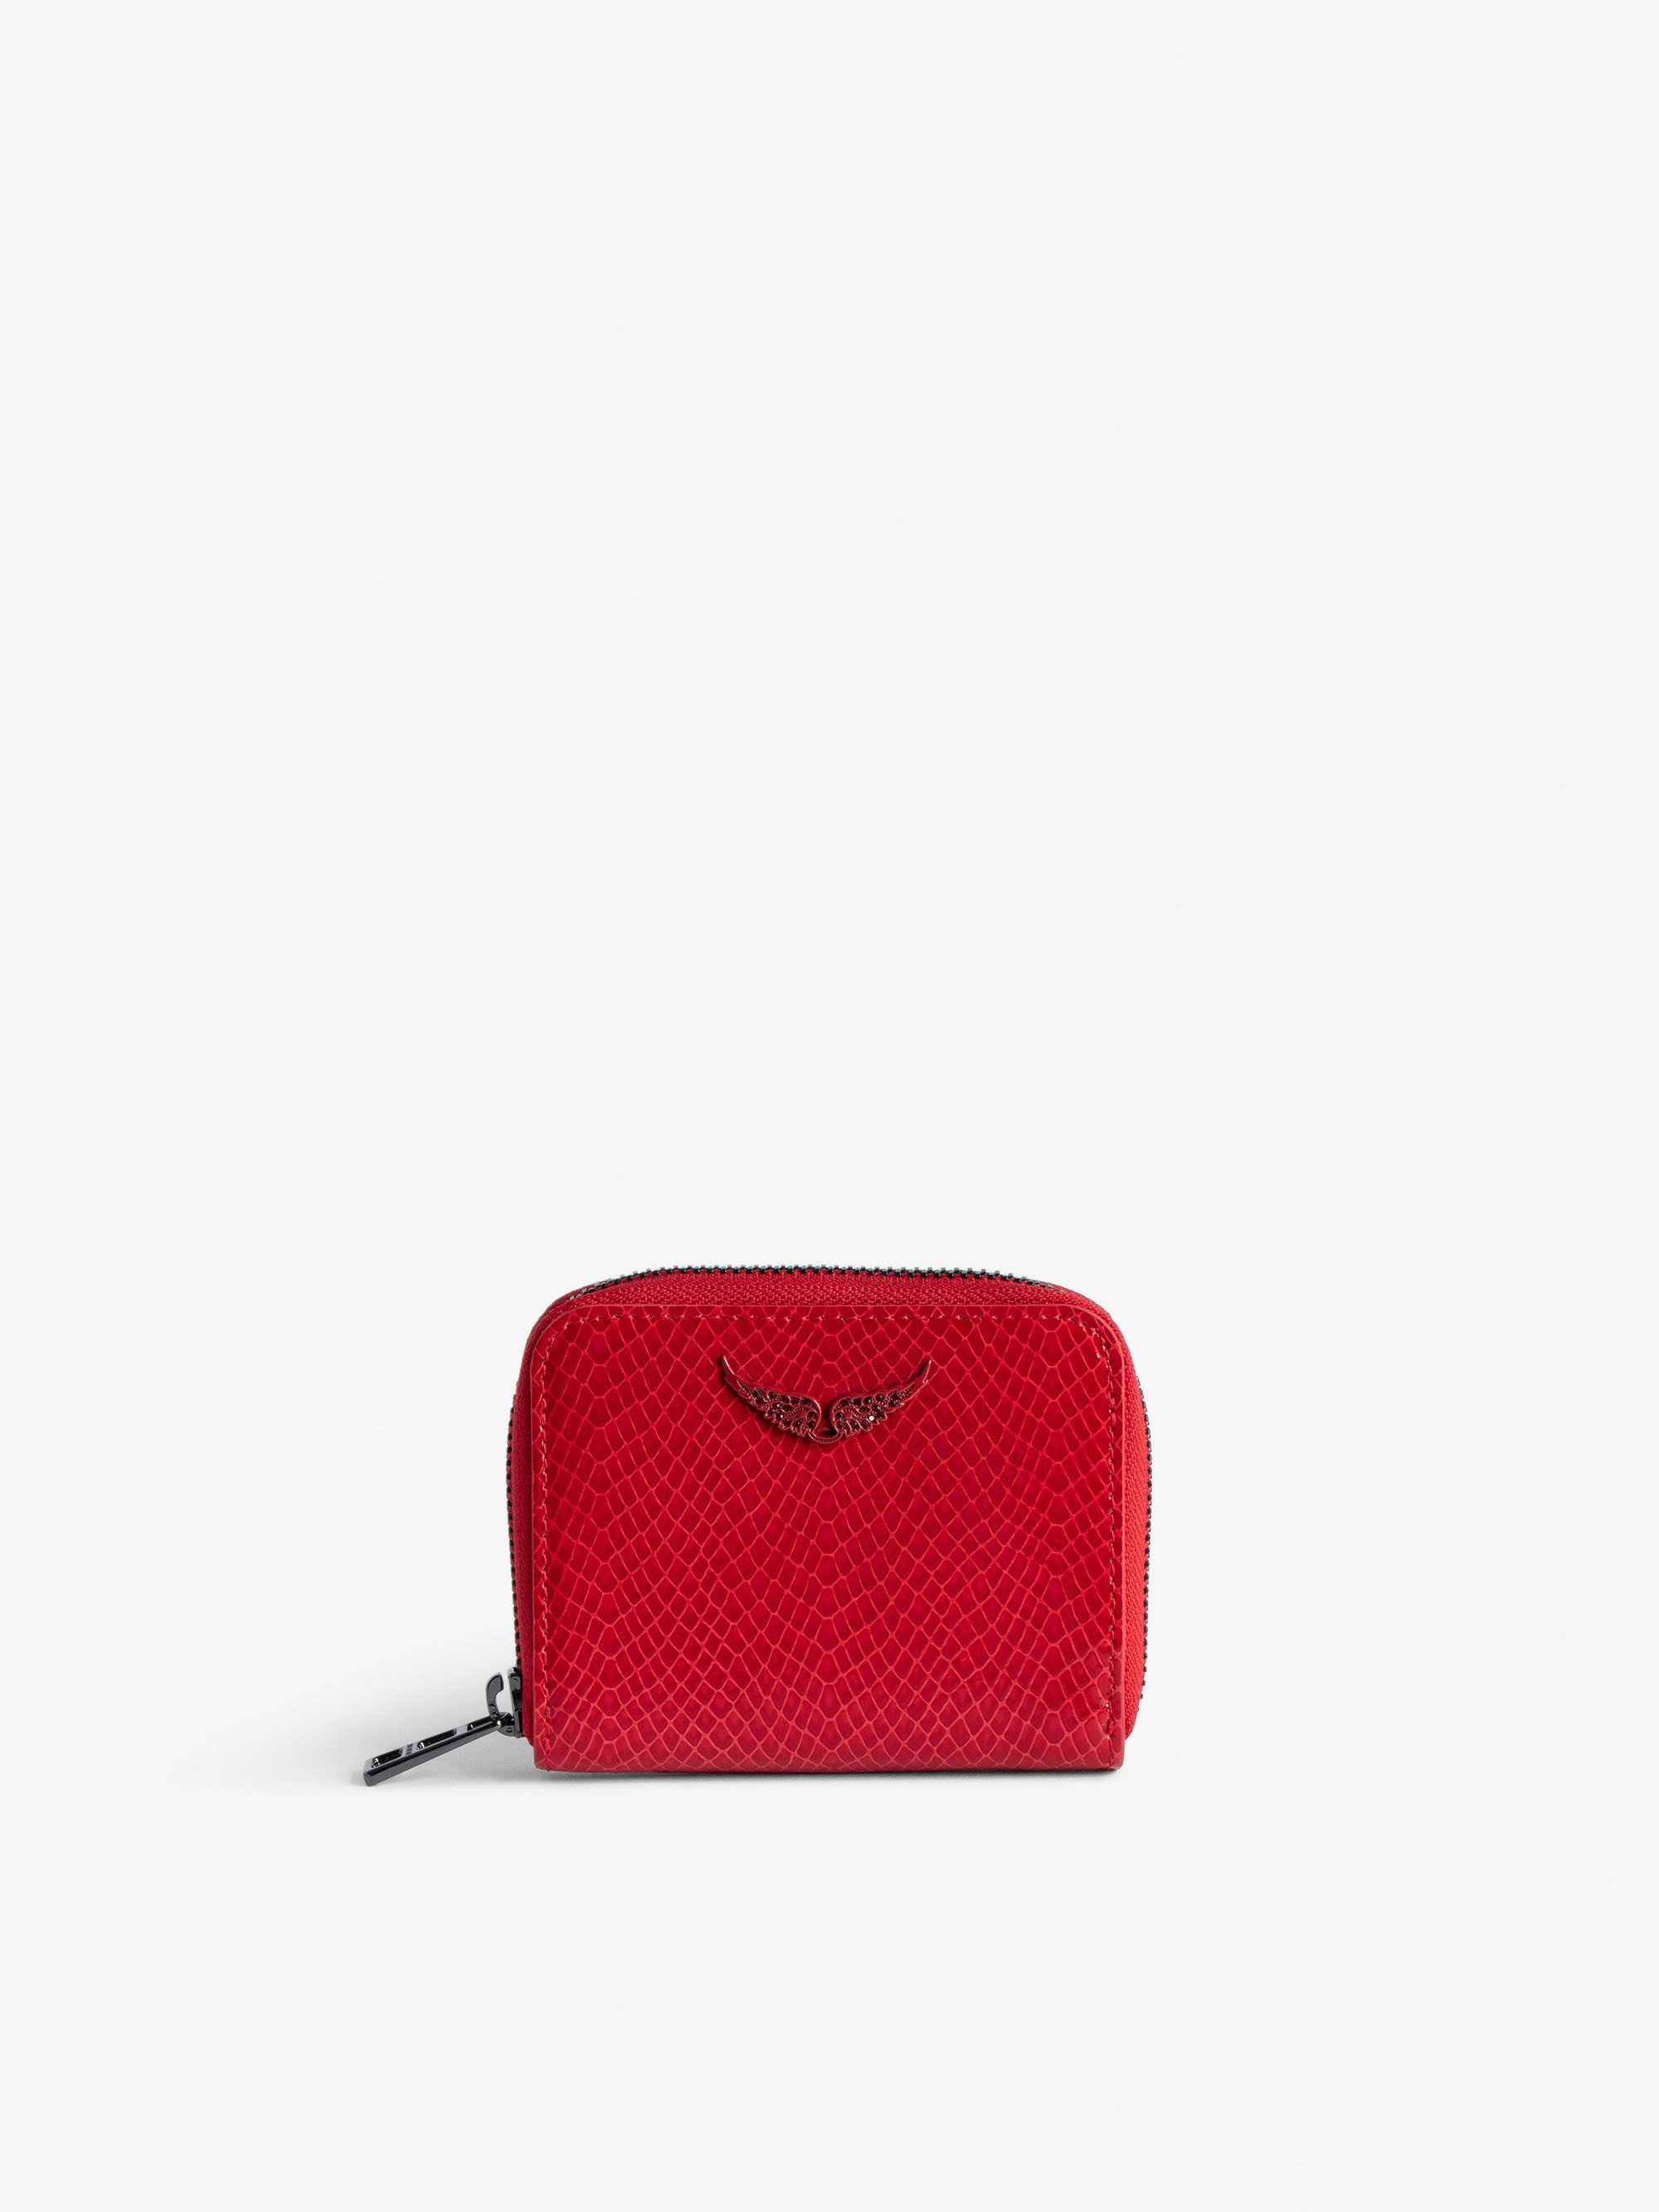 Portemonnaie Mini ZV Glossy Wild Prägung - Brieftasche aus glänzendem, rotem Leder mit Python-Effekt mit einem Flügel-Charm aus Strasssteinen für Damen.